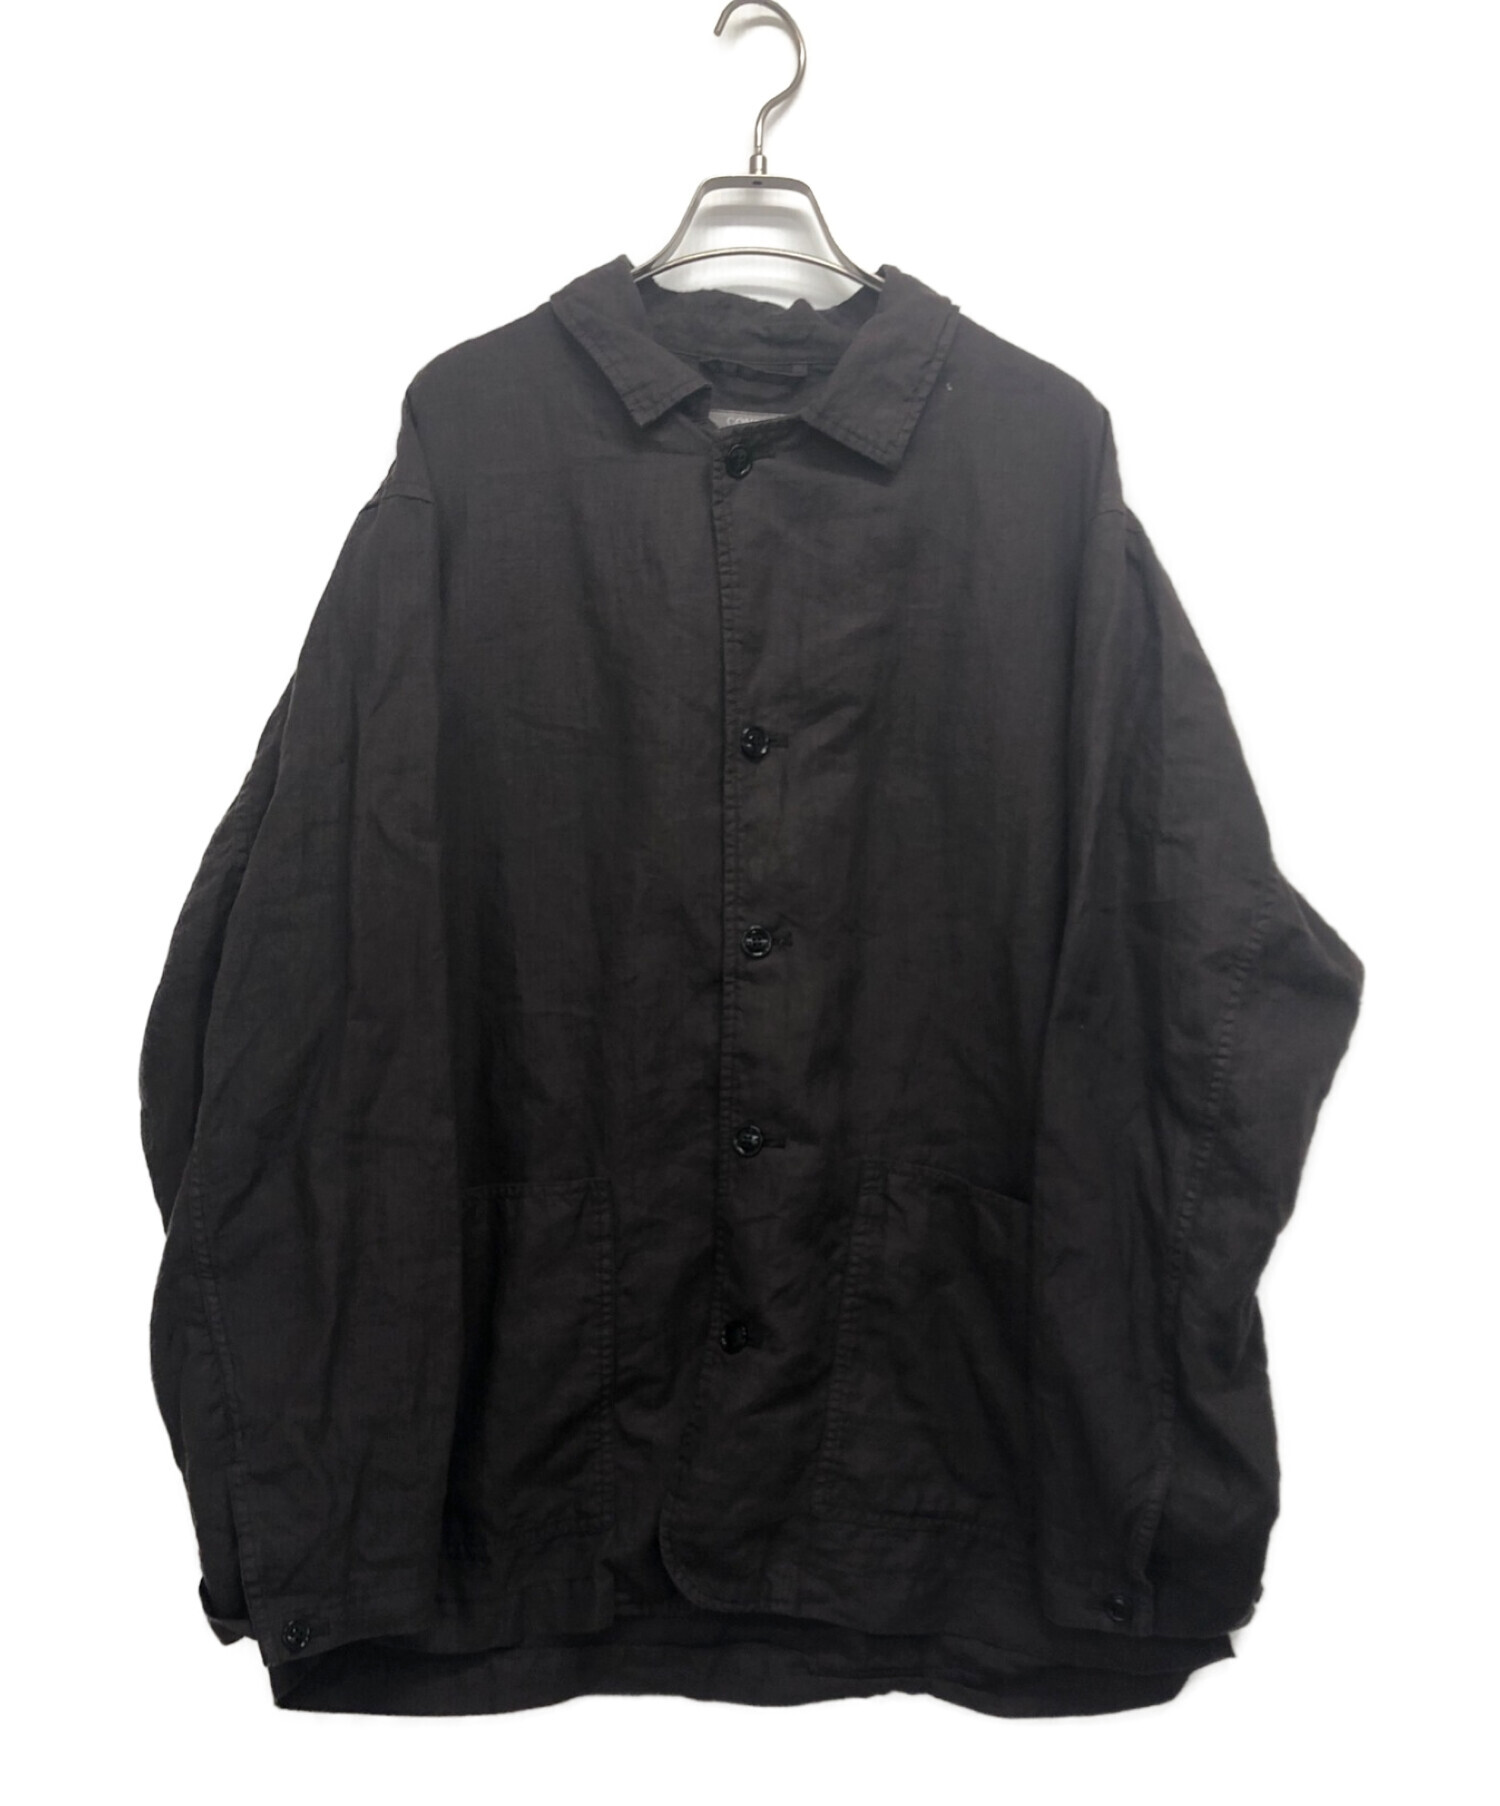 confect (コンフェクト) オーバーダイリネンワークジャケット ブラウン サイズ:5